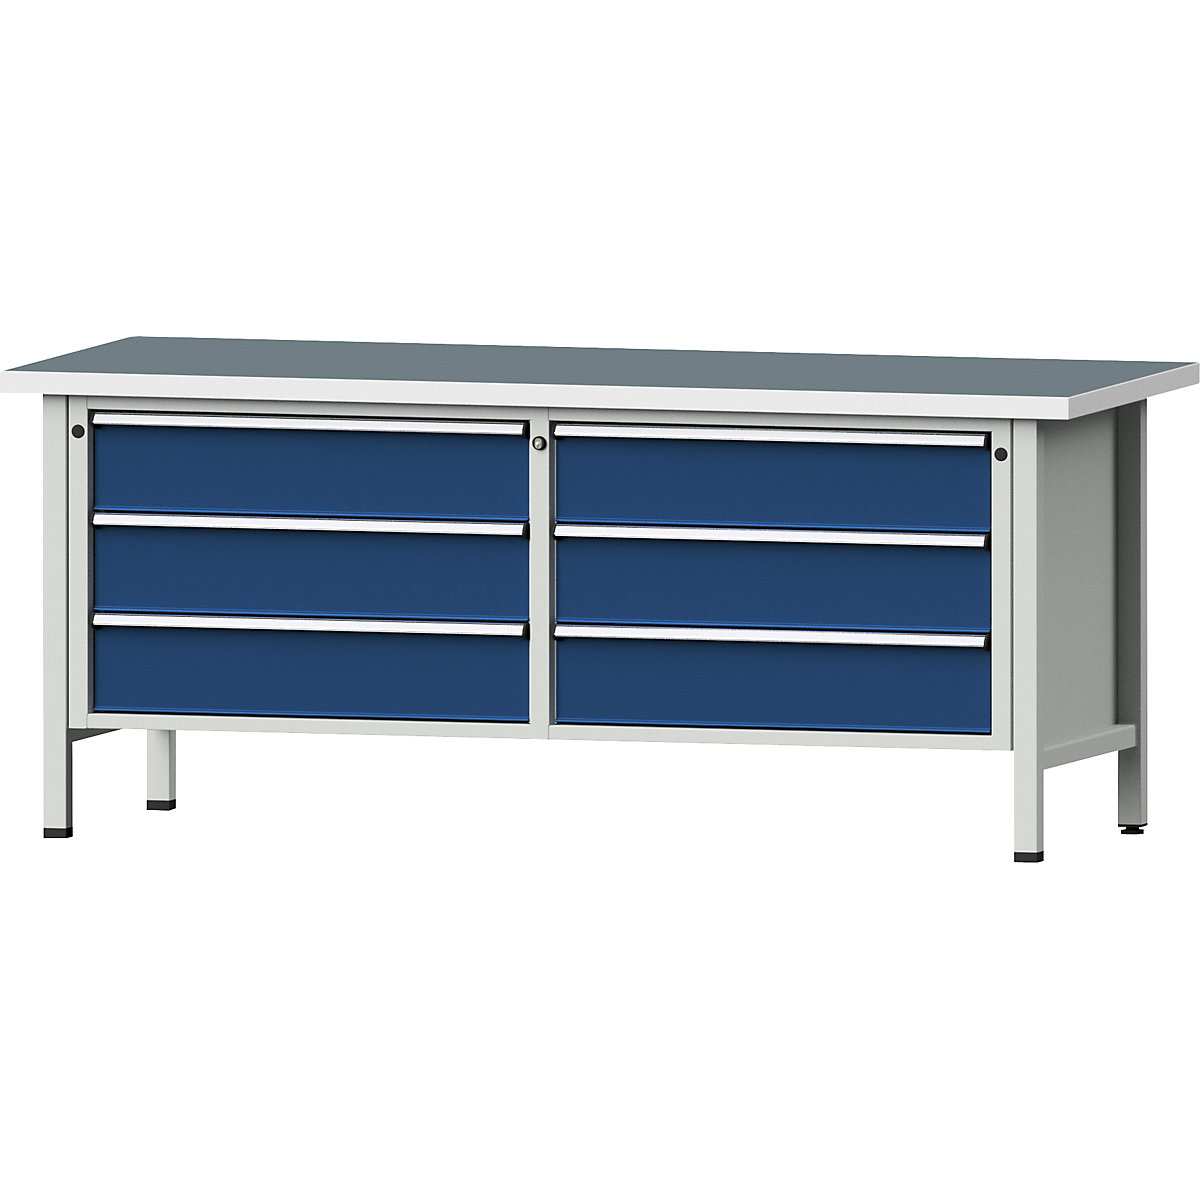 Établi avec tiroirs XL/XXL, sur piétement – ANKE, largeur 2000 mm, 6 tiroirs 180 mm, plateau universel, façade bleu gentiane-11